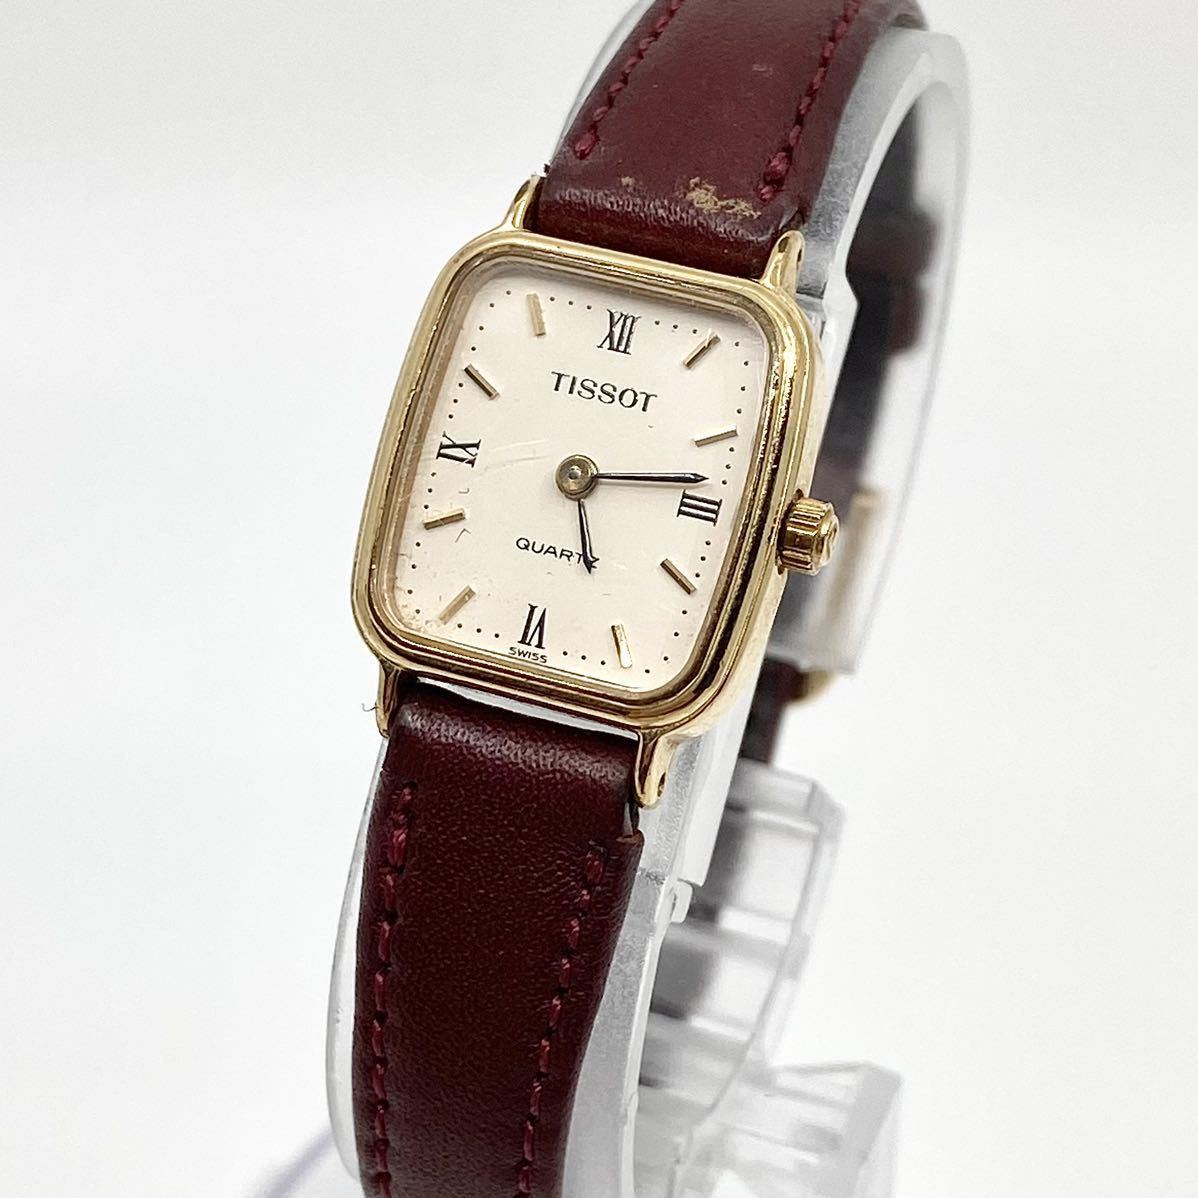 TISSOT 腕時計 クォーツ quartz 2針 Swiss スイス製 レザーベルト ホワイト ゴールド ブラウン 白 金 茶 maruman ティソ Y185_画像1